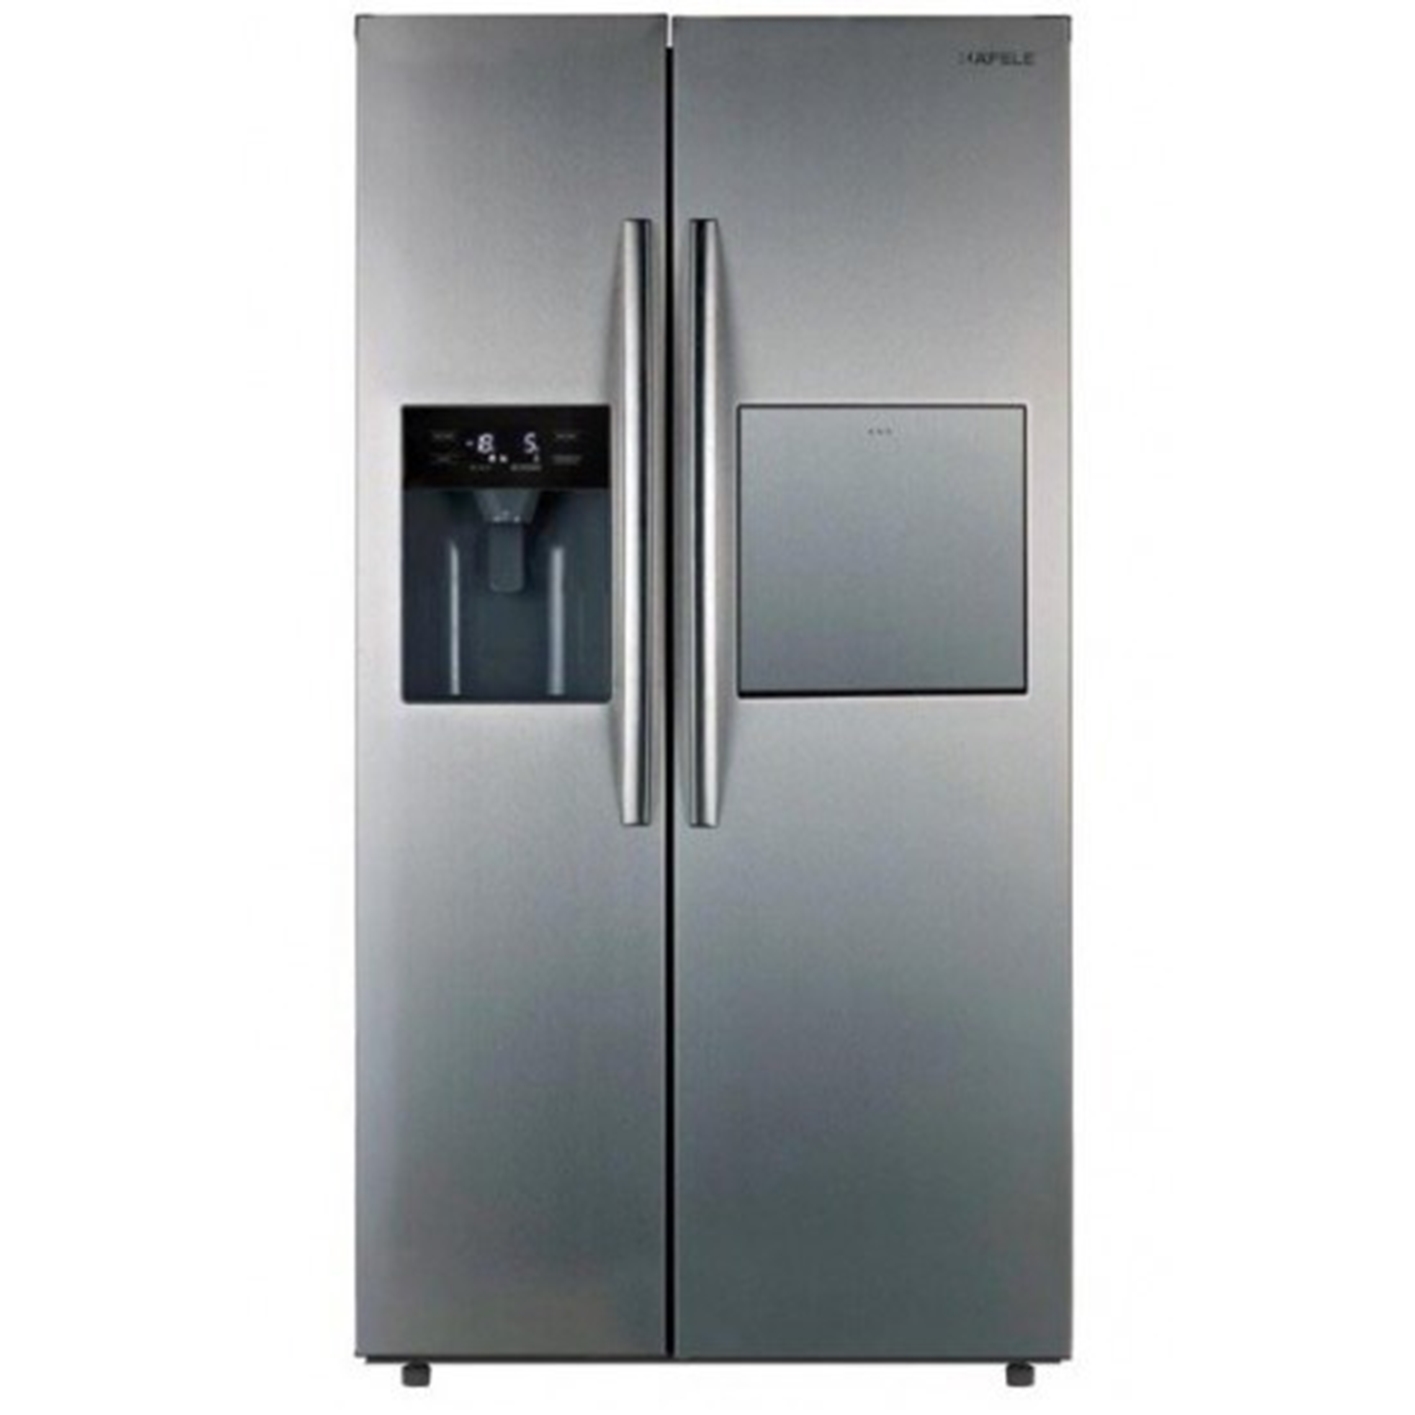 Hình ảnh của Tủ lạnh 2 cửa Hafele 534.14.250